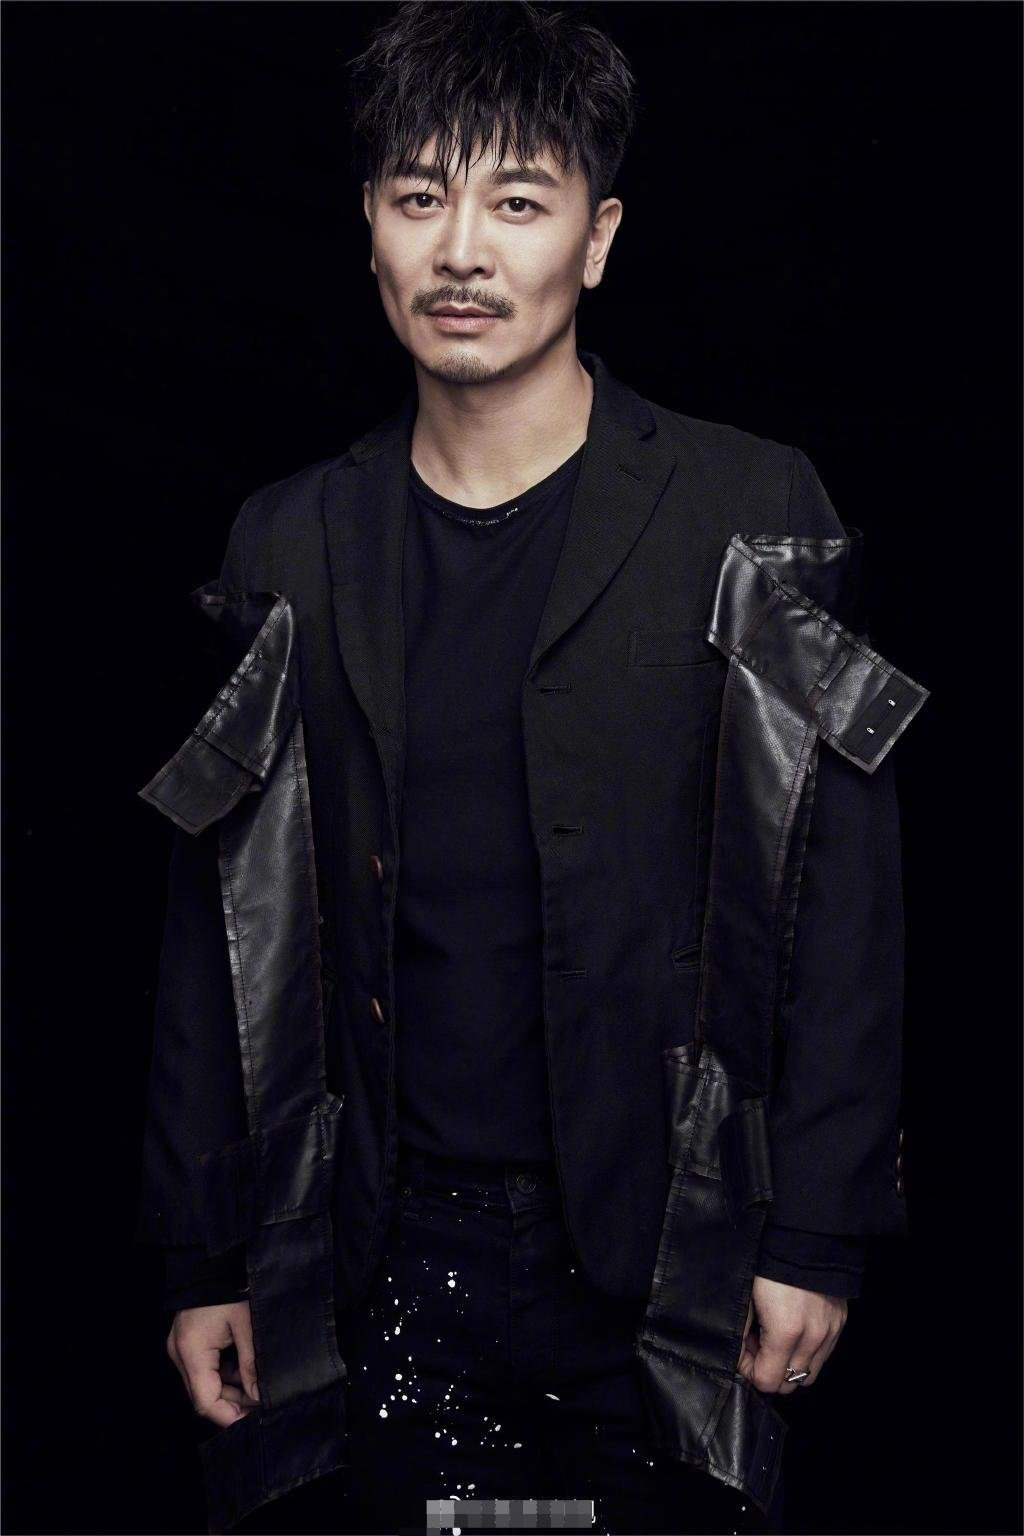 吴樾曾在2010年,出演张纪中版的电视剧《西游记》中扮演孙悟空,广受